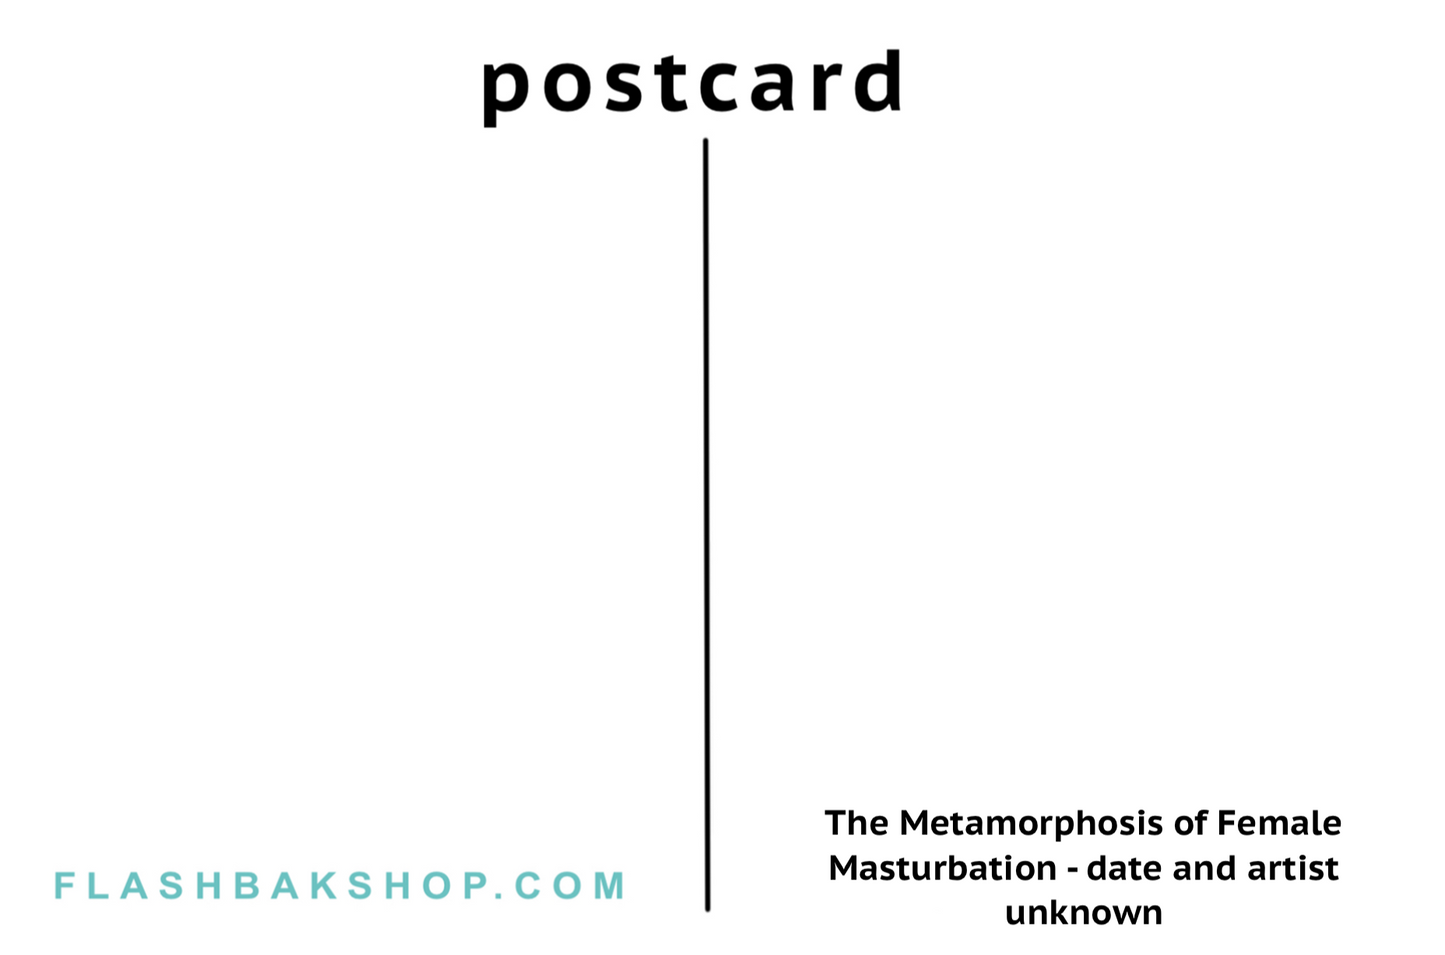 La Metamorfosis de la Masturbación Femenina, fecha y artista desconocidos - Postal